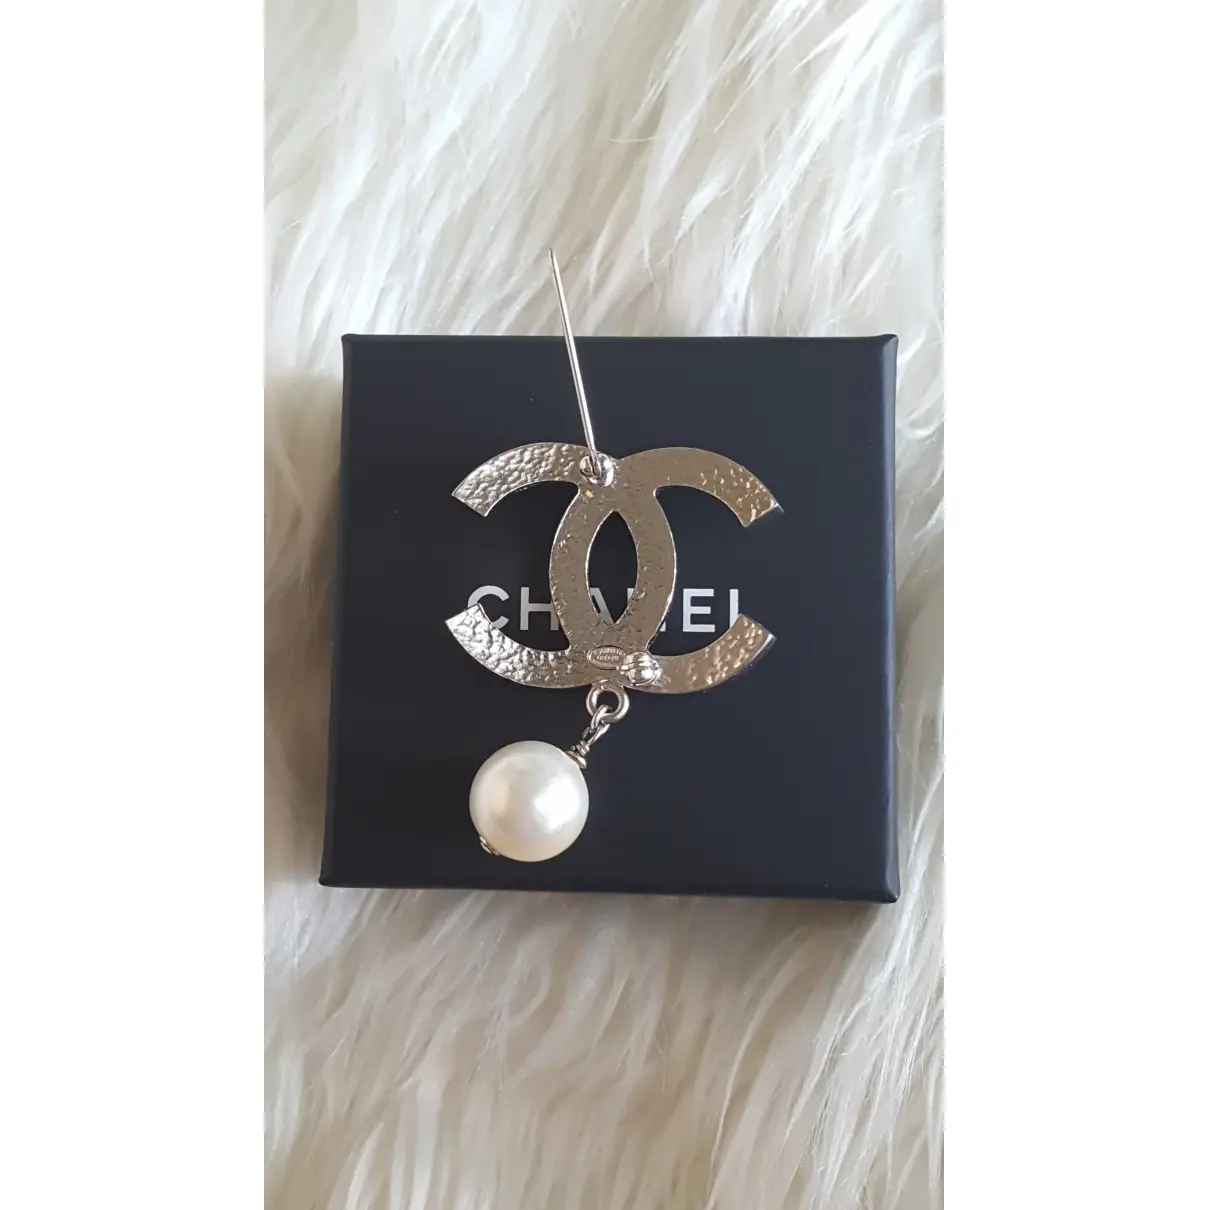 CC pearl pin & brooche Chanel